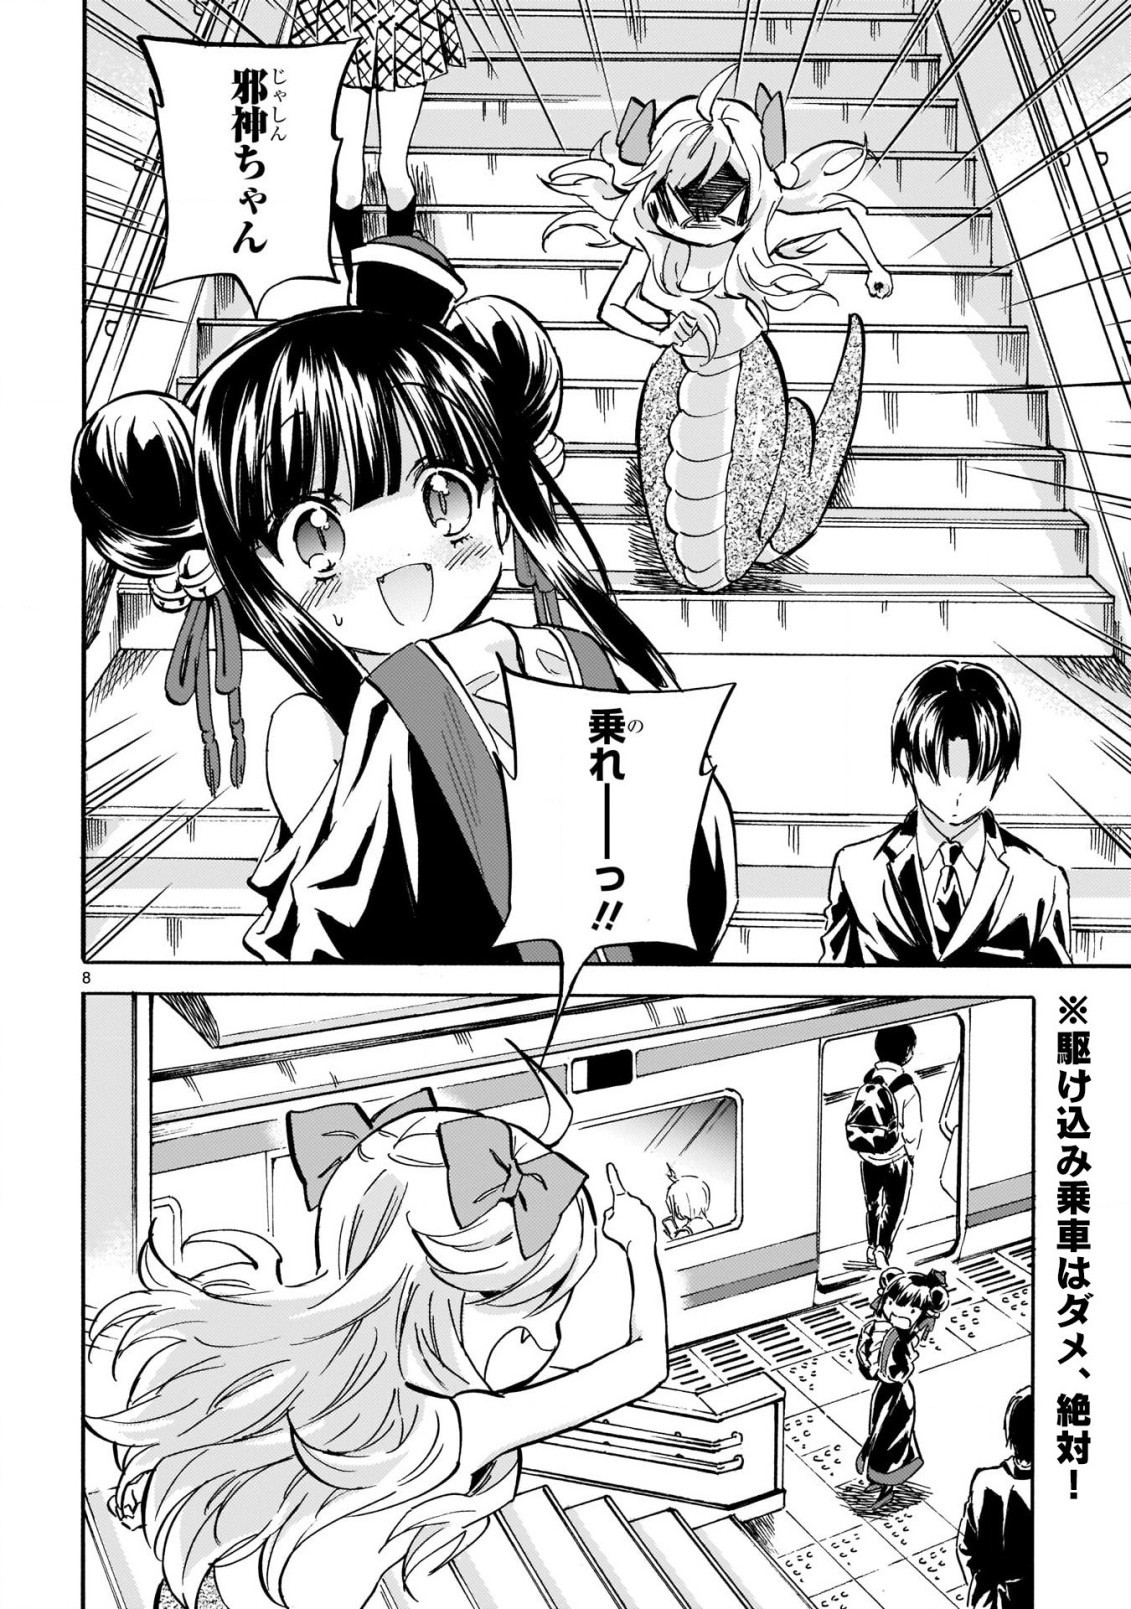 Jashin-chan Dropkick - Chapter 211 - Page 8